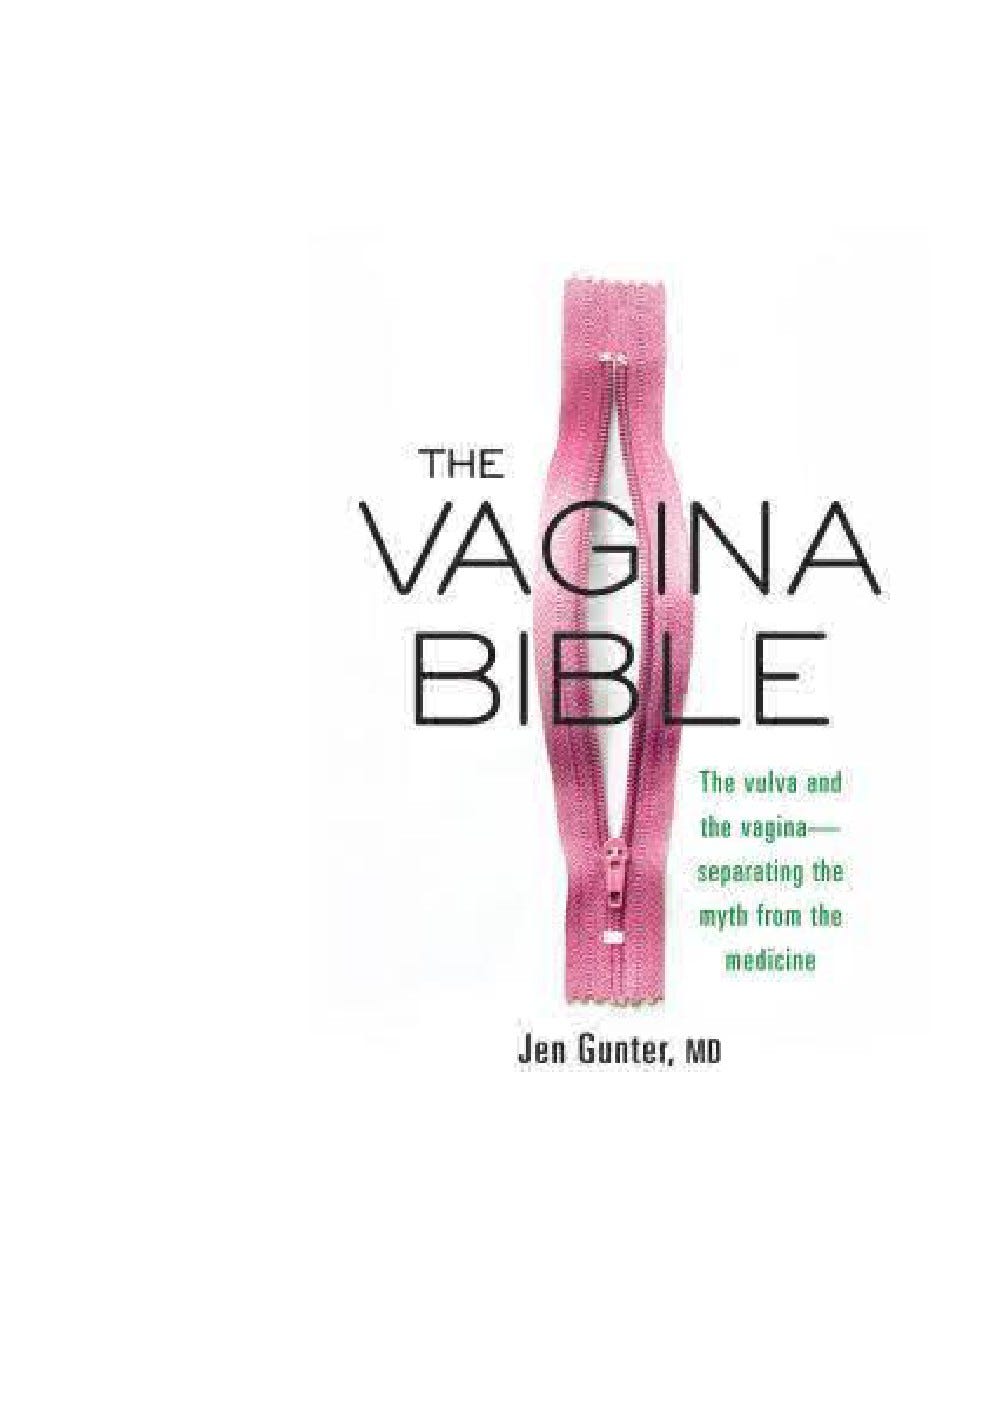 The vagina bible